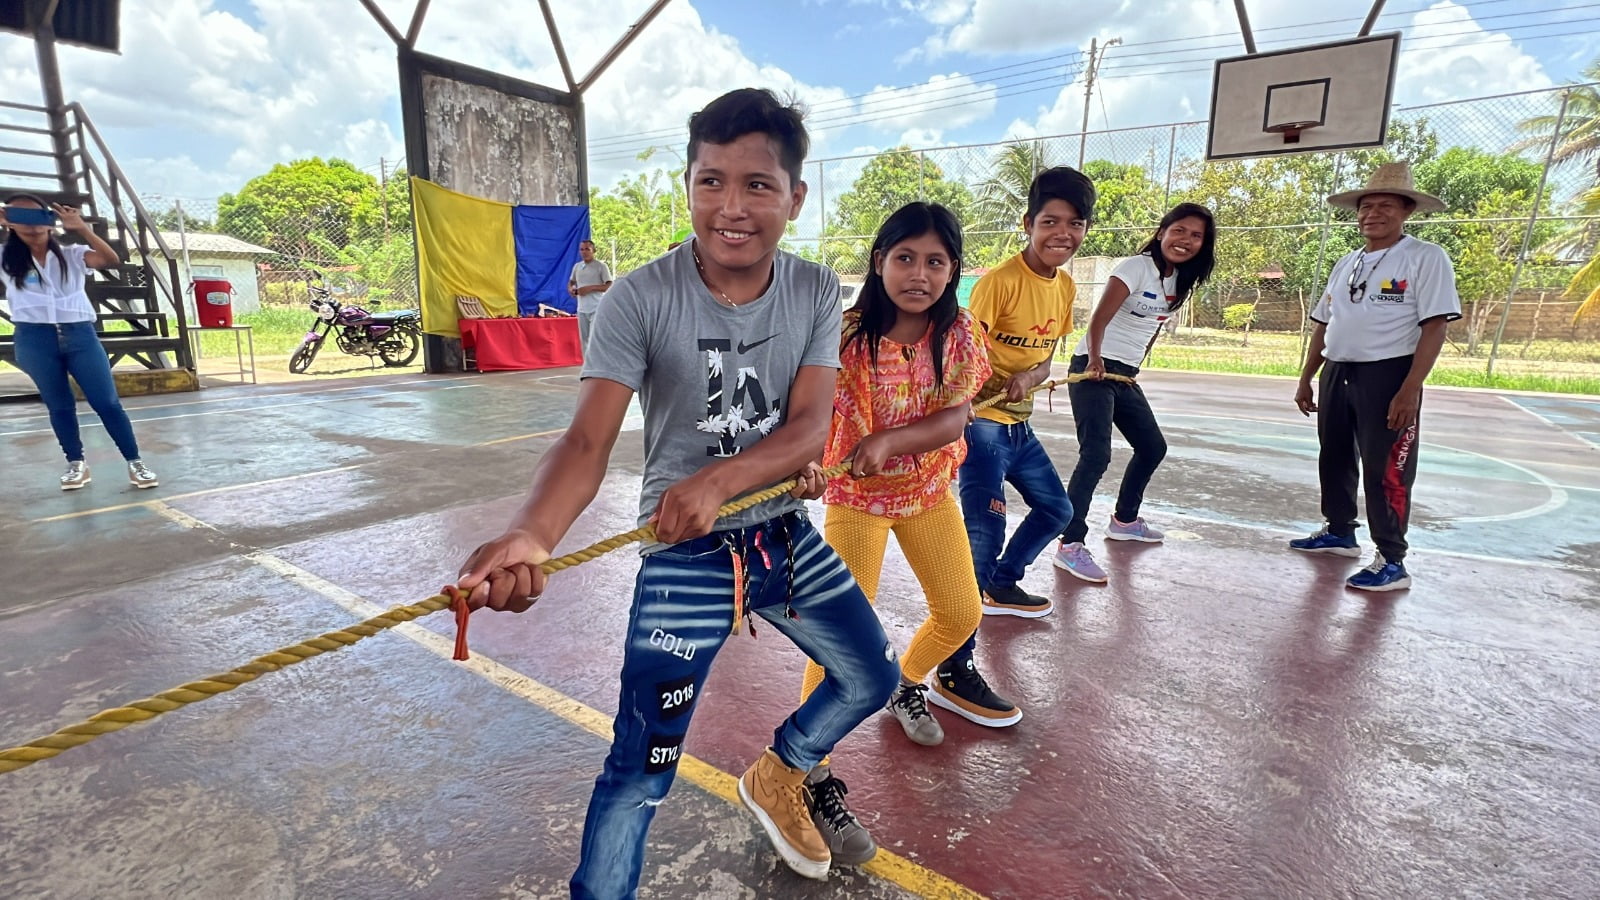 4 municipios disputan participación en Juegos Nacionales Escolares Indígenas